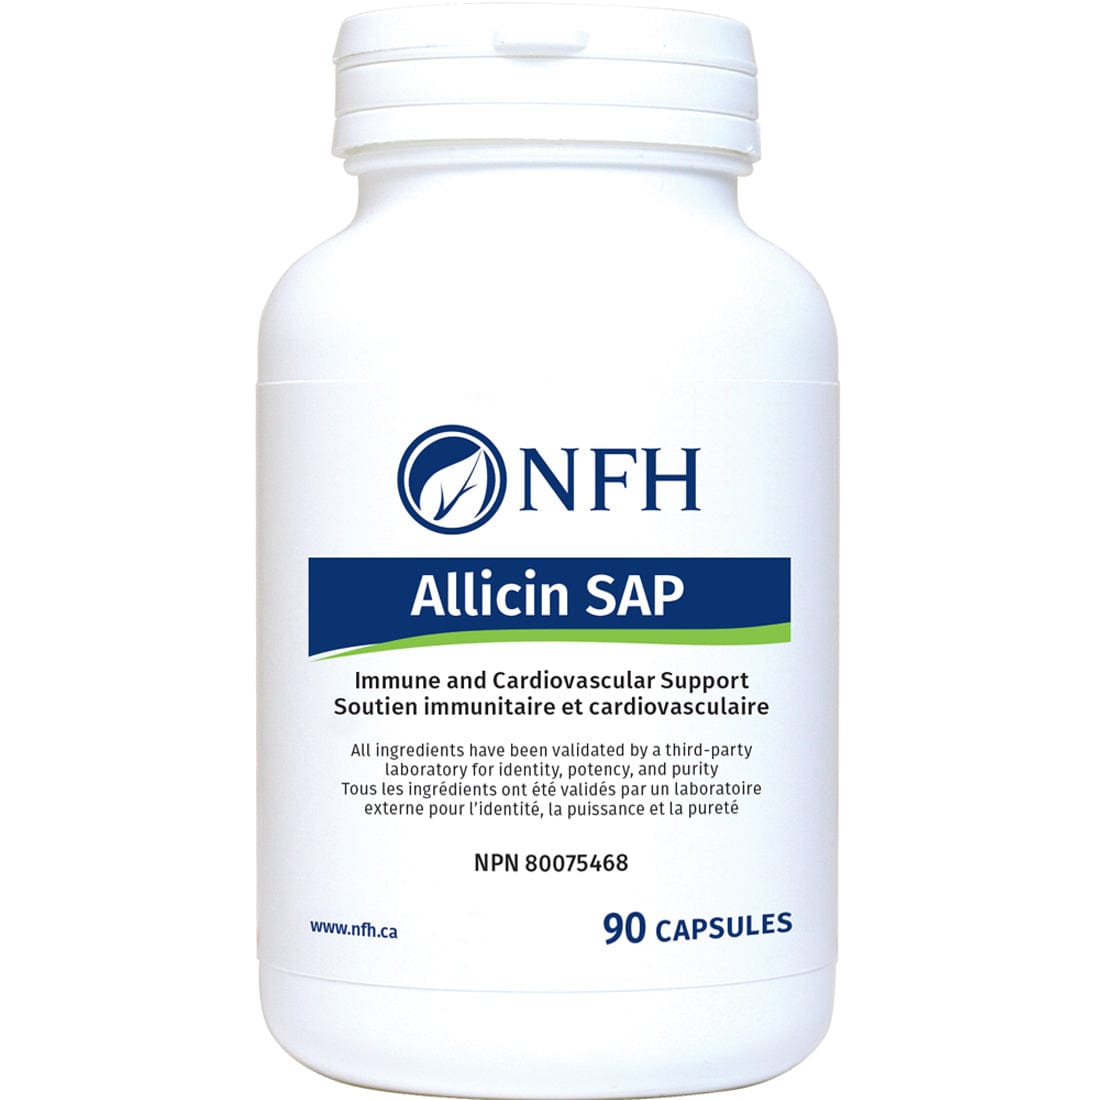 NFH Allicin SAP (Stabilized Garlic), 90 Capsules